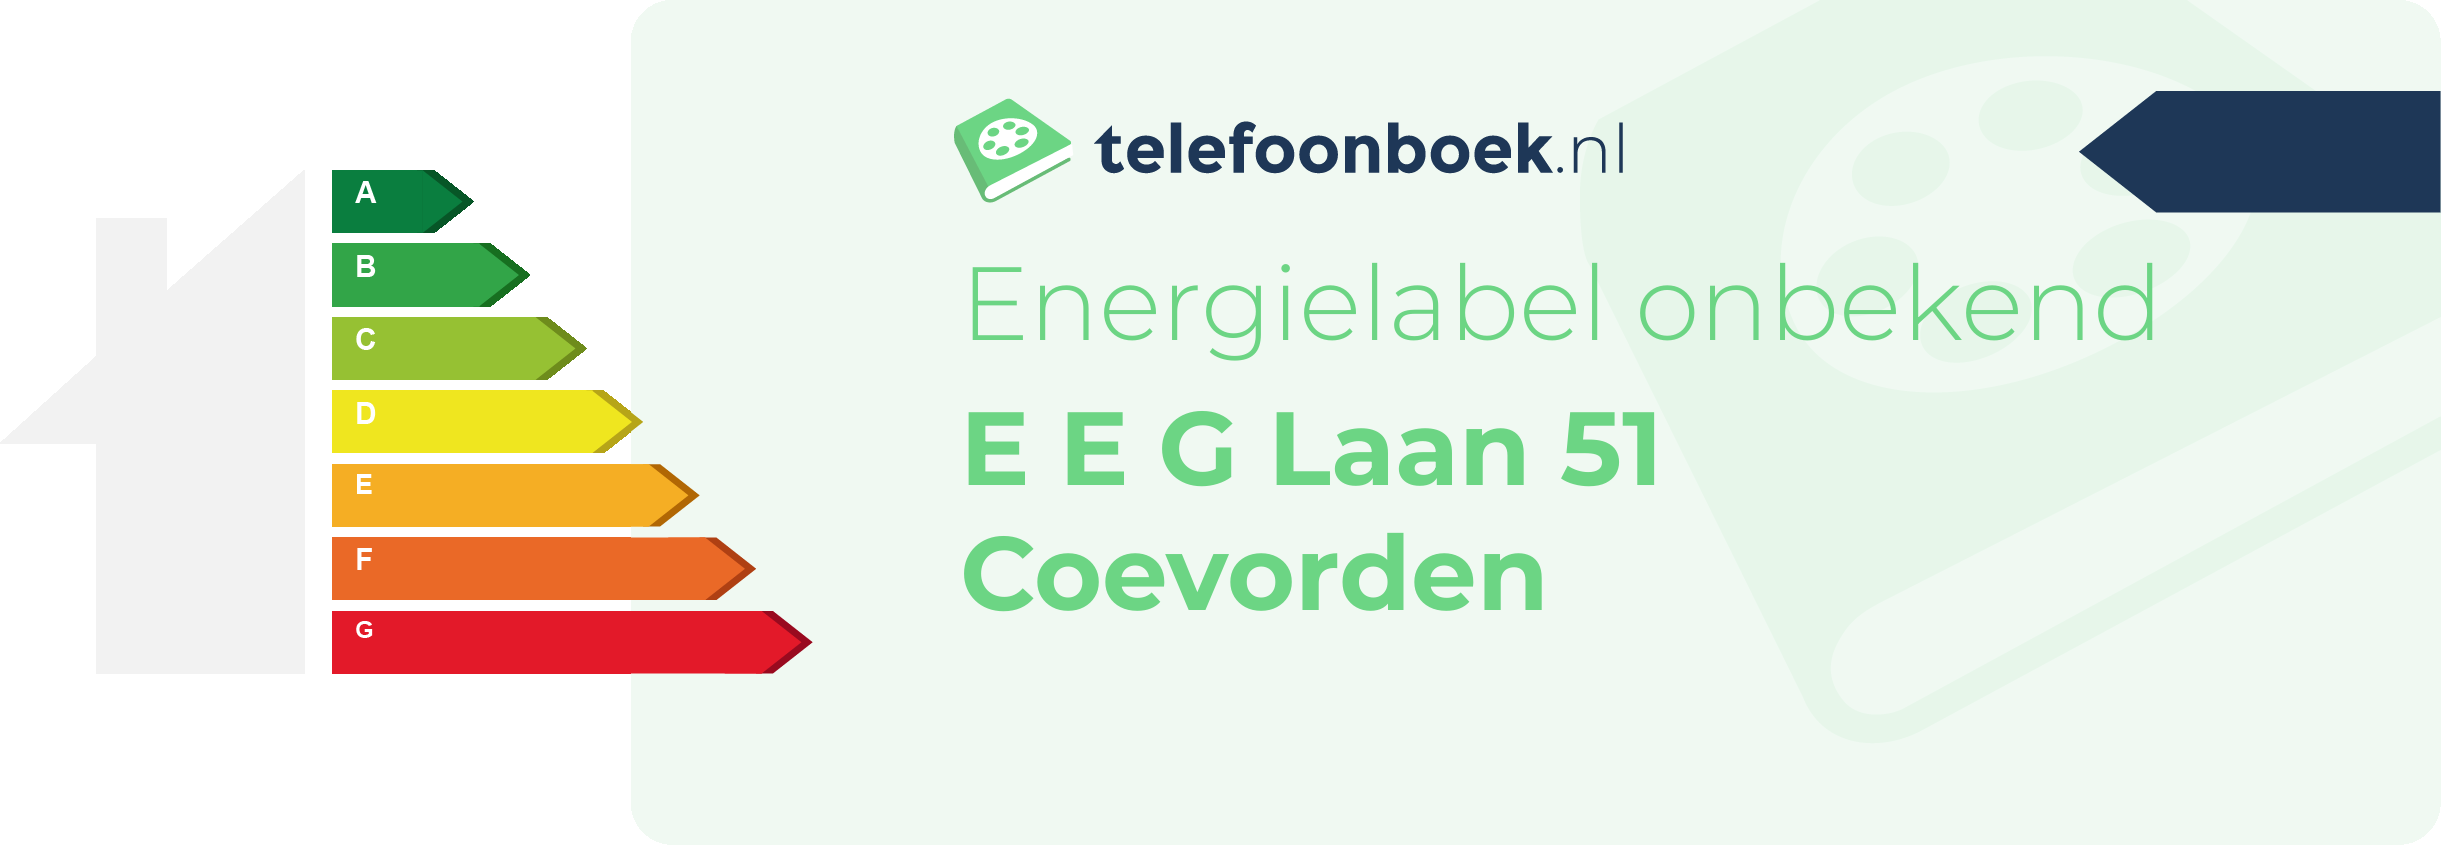 Energielabel E E G Laan 51 Coevorden